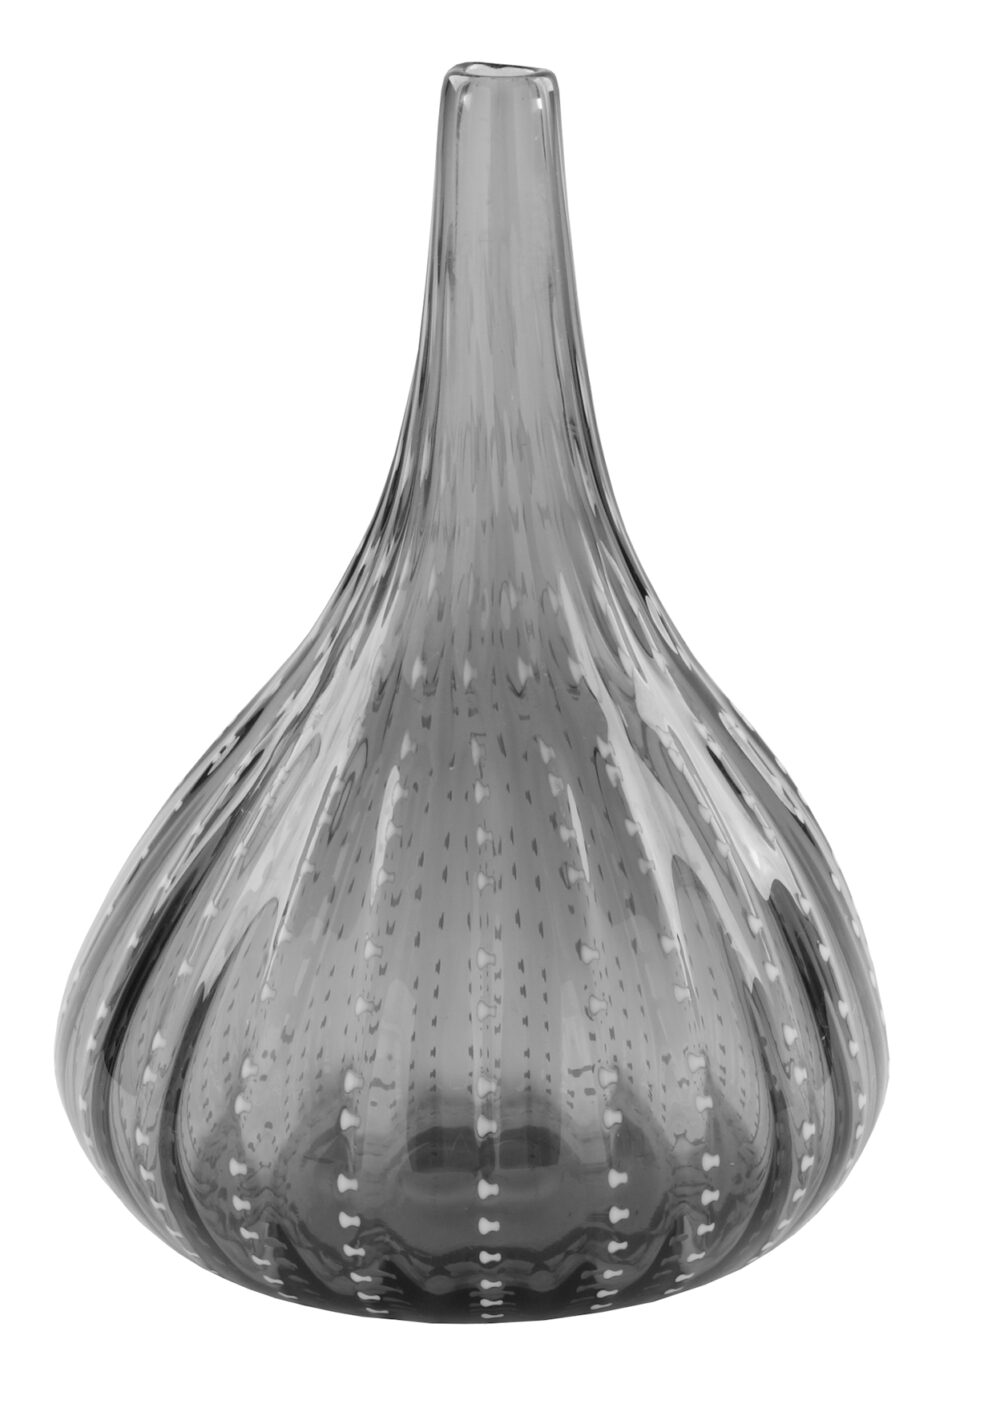 115030 Vase Dekovase Tischvase Blumenvase grau, silberfarben Fink ALVINA